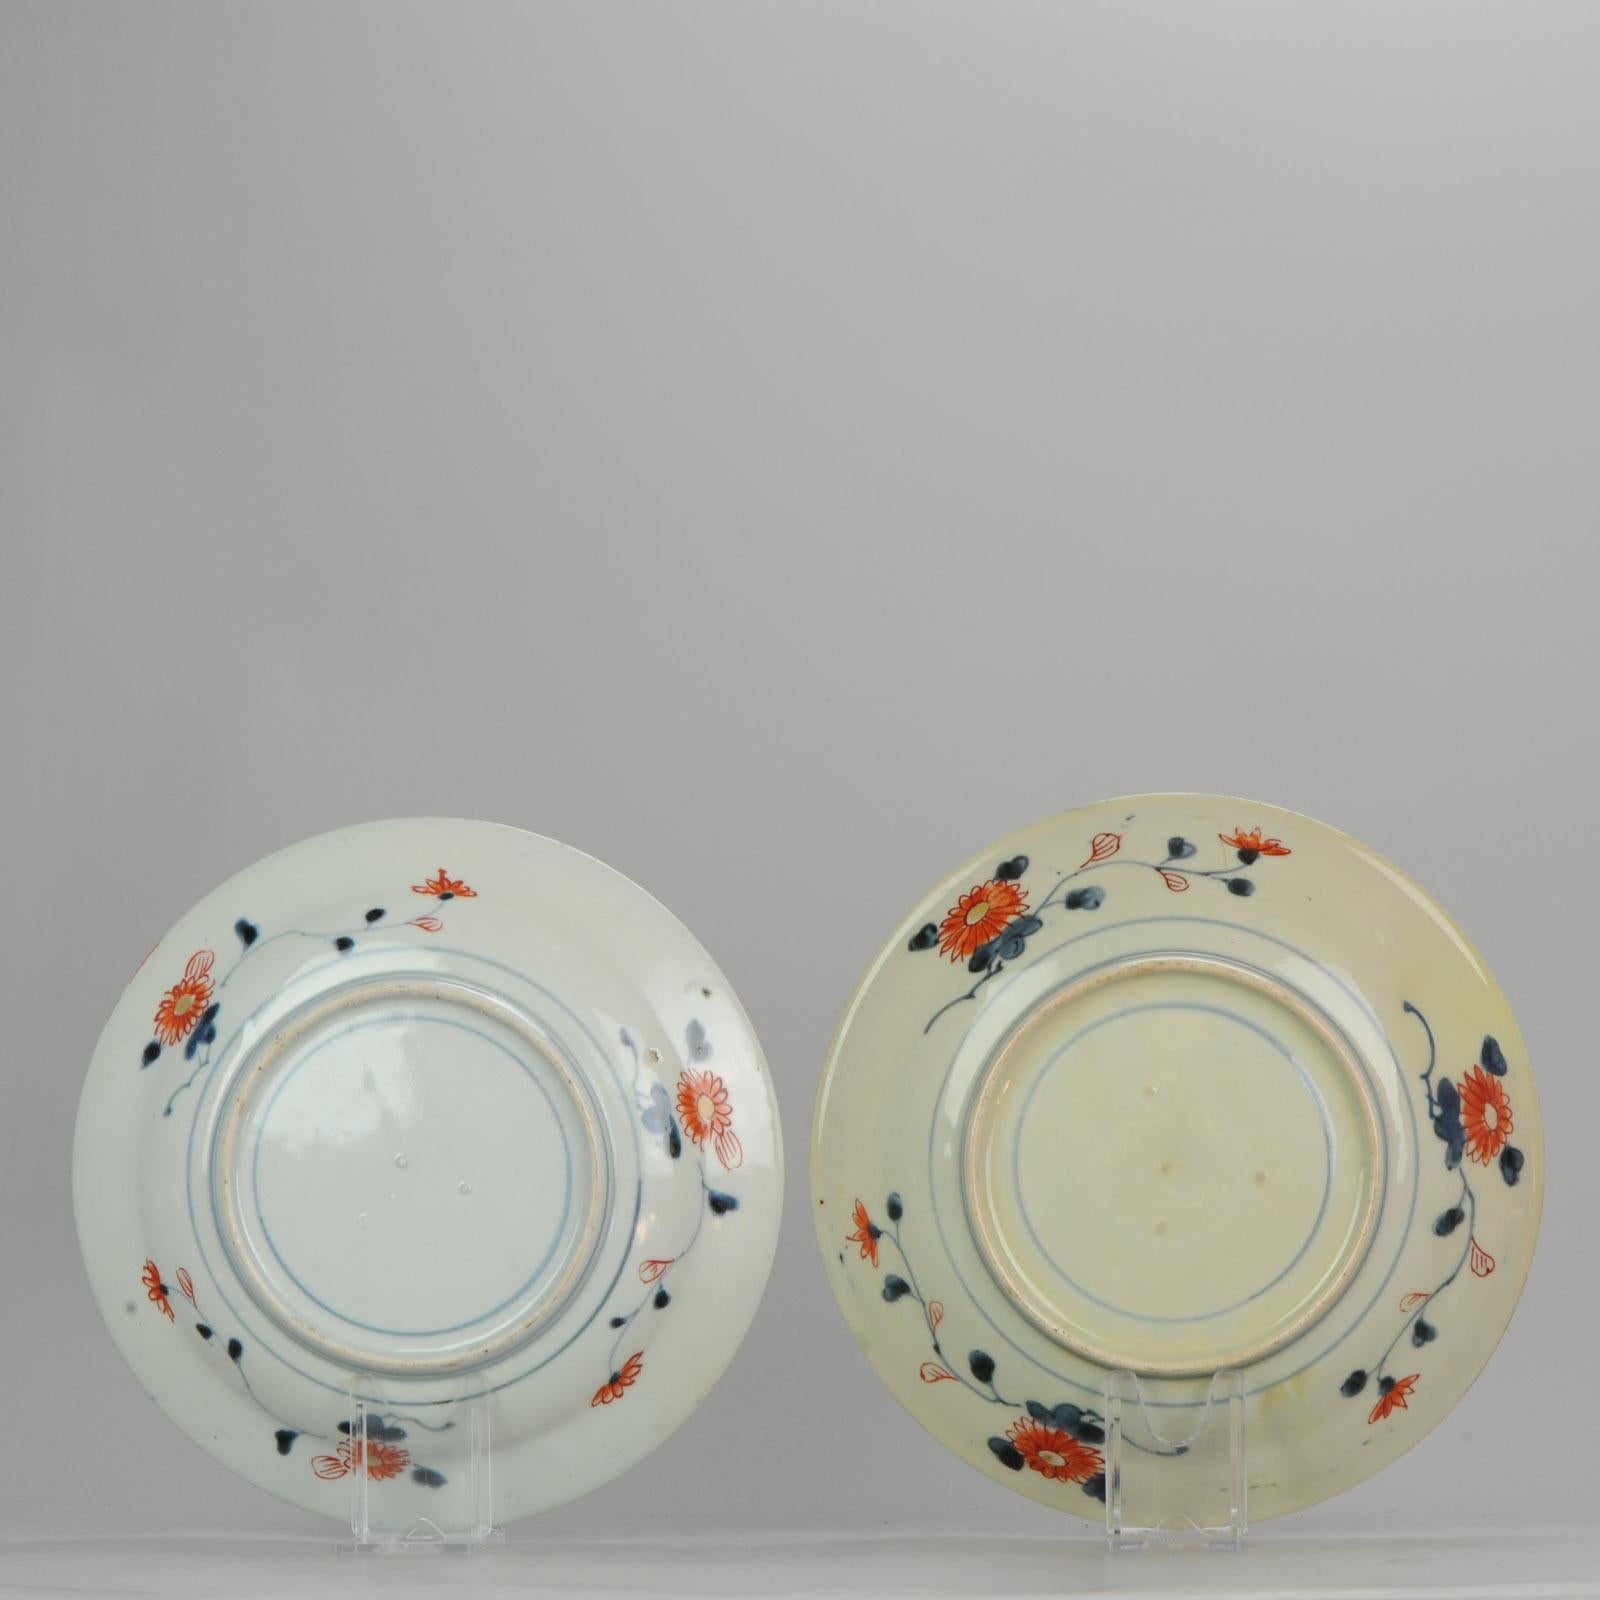 Antique circa 1700 Japanese Imari Porcelain Plates Arita Edo Flowers 3